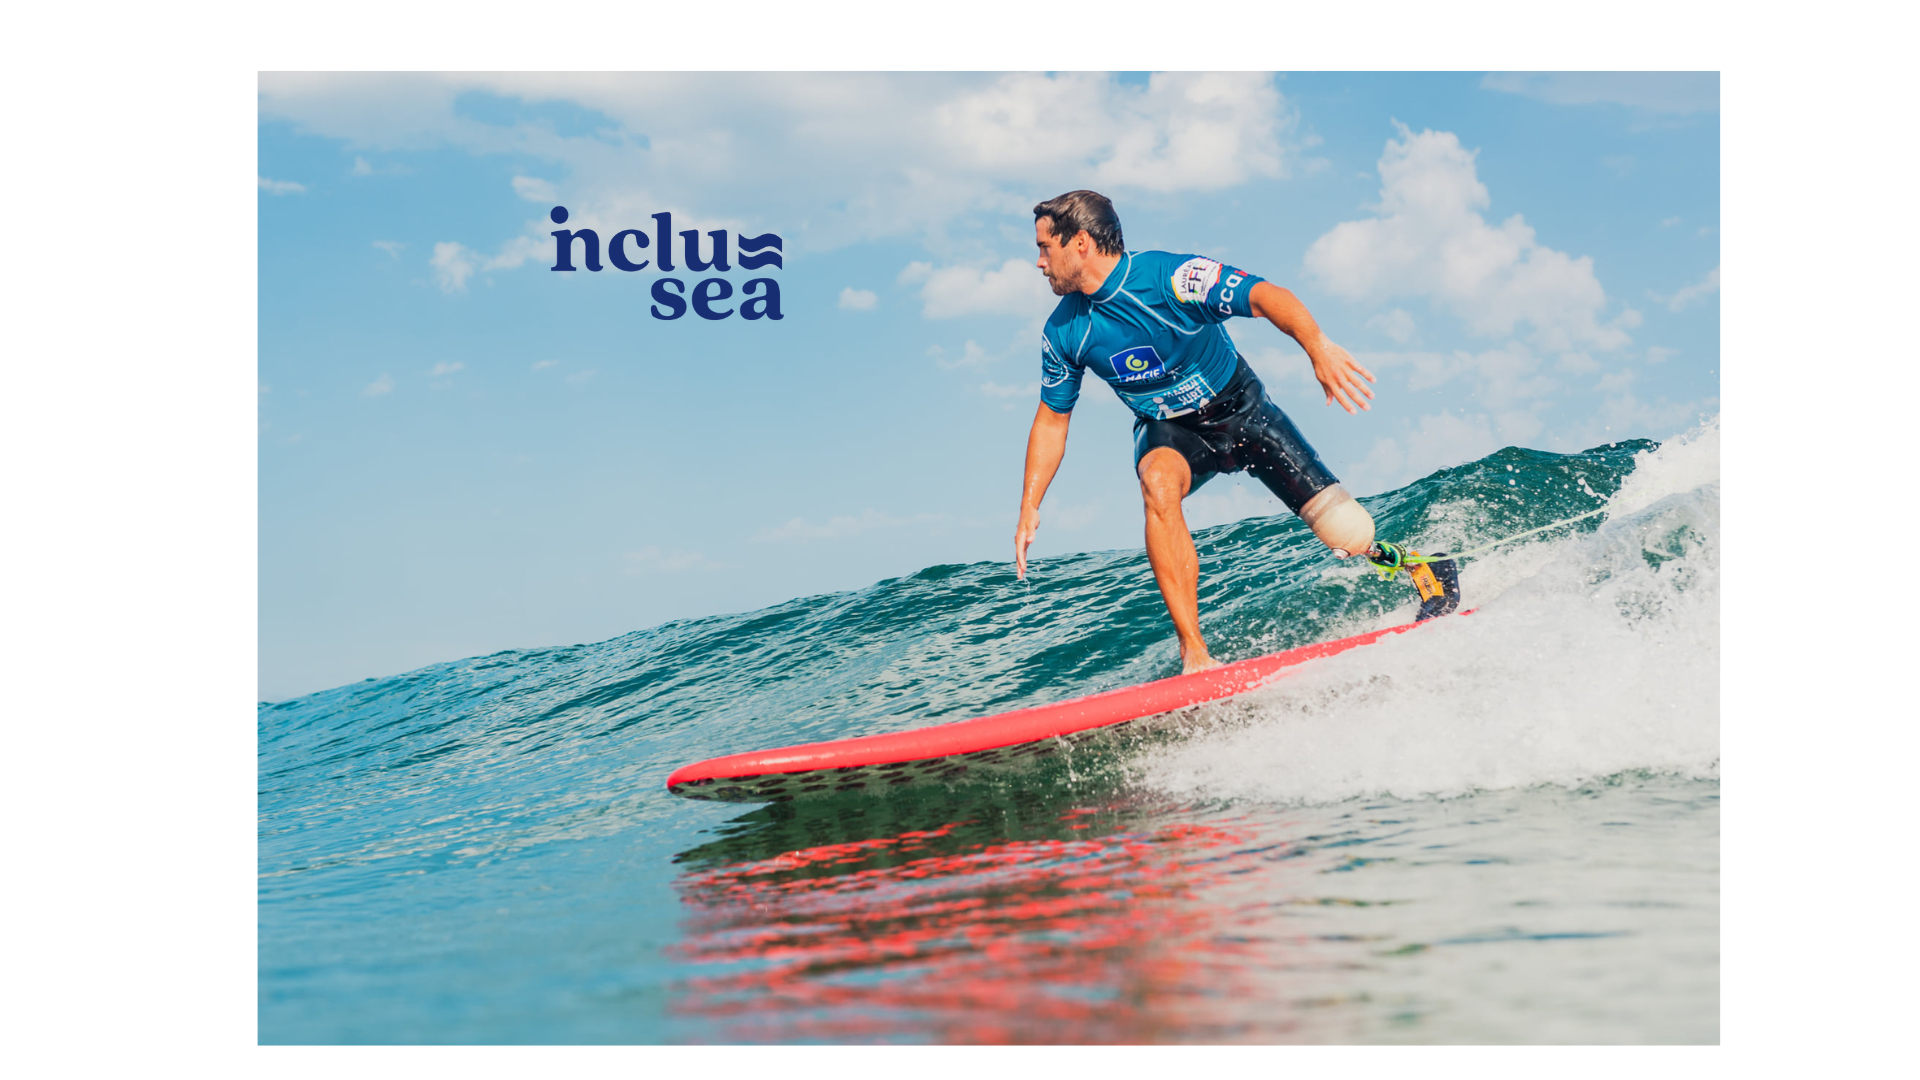 Retour sur le webinaire : 5 intervenants pour parler du Para Surf autour du projet INCLUSEA